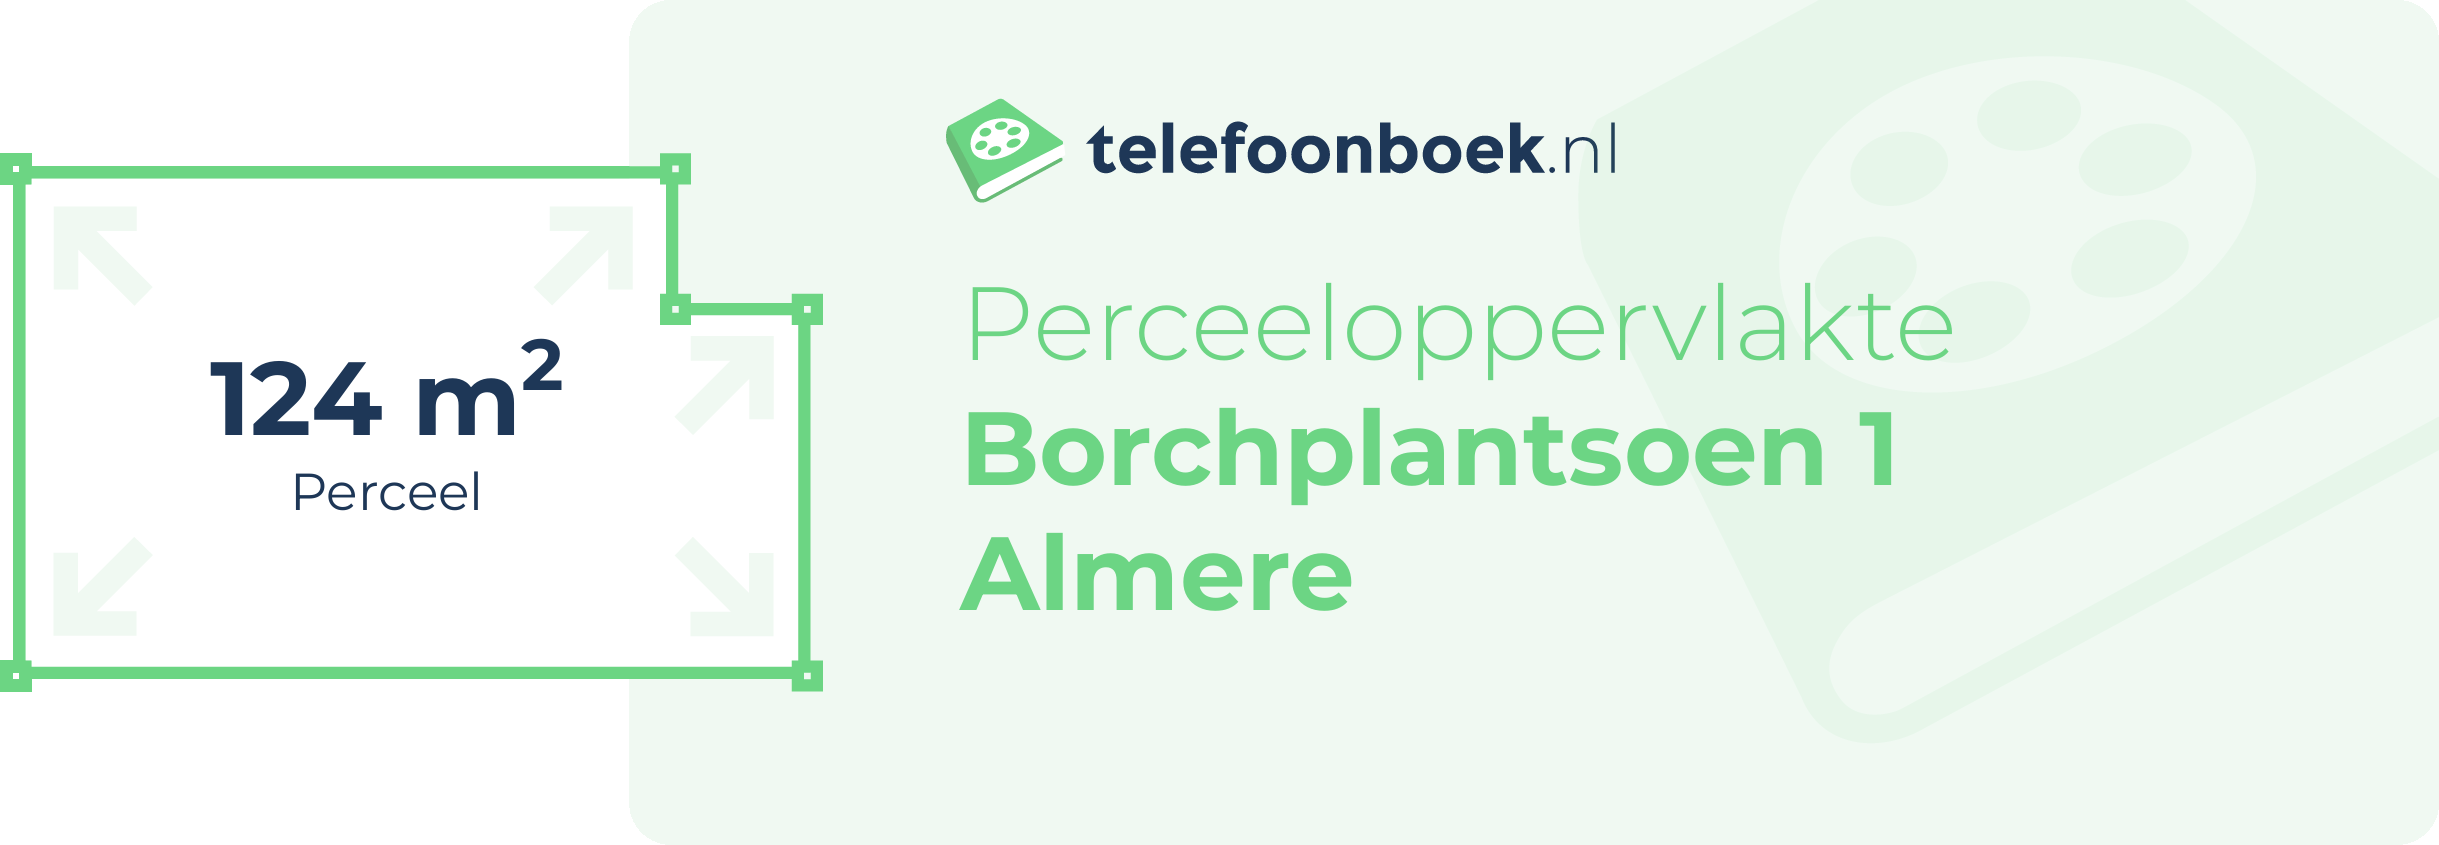 Perceeloppervlakte Borchplantsoen 1 Almere